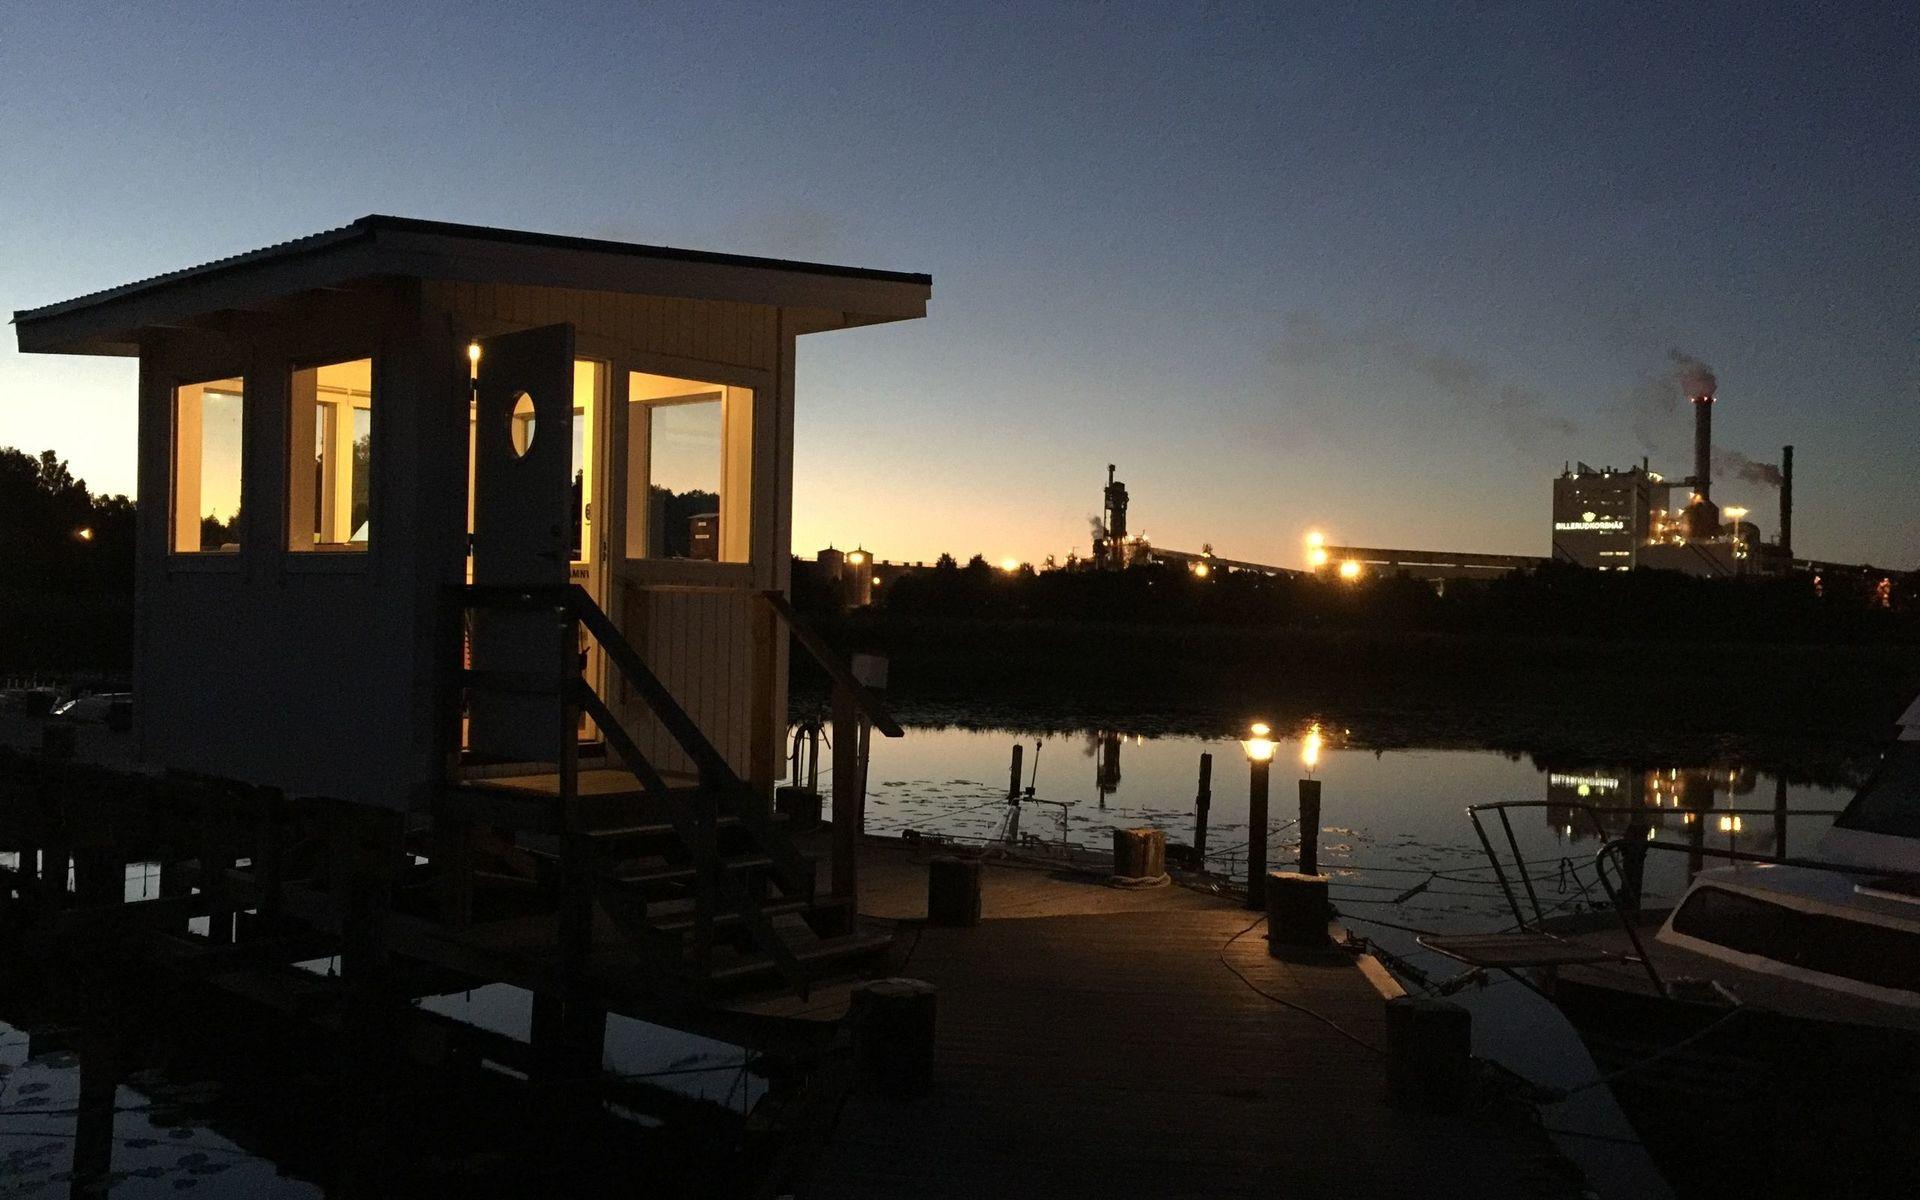 &quot;En natt i början av juli då jag satt ”båtvakt” på bryggan utanför Gruvöns bruk i Grums. Bilden kan benämnas ”Arbete i sommarnatten”. Bild: Thomas Blom